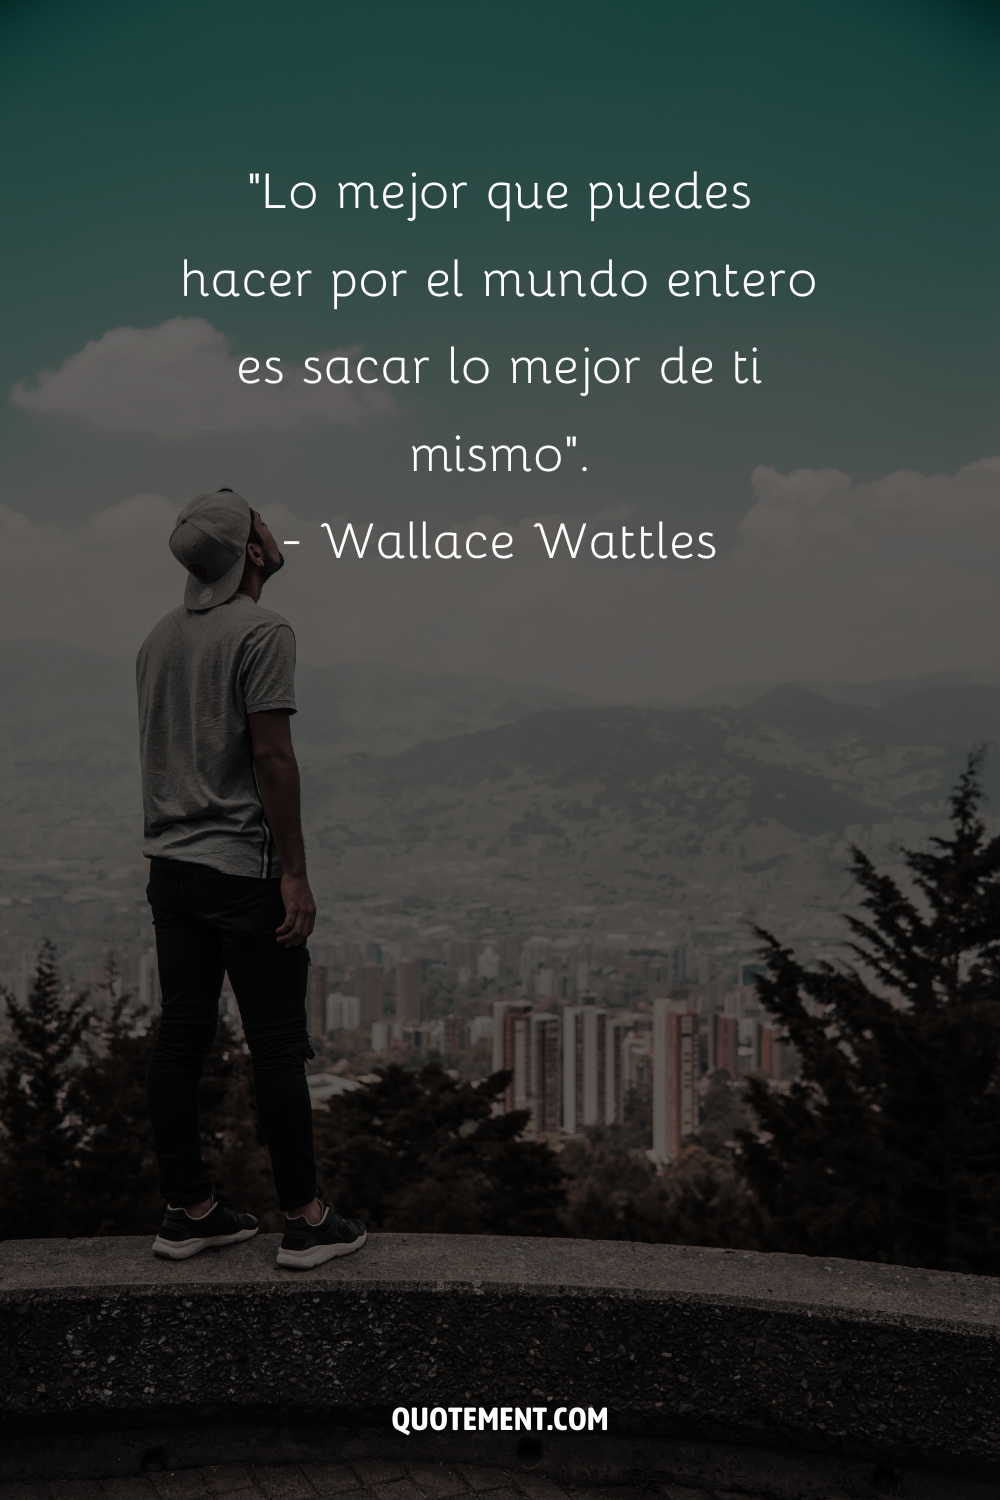 "Lo mejor que puedes hacer por el mundo entero es sacar lo mejor de ti mismo". - Wallace Wattles